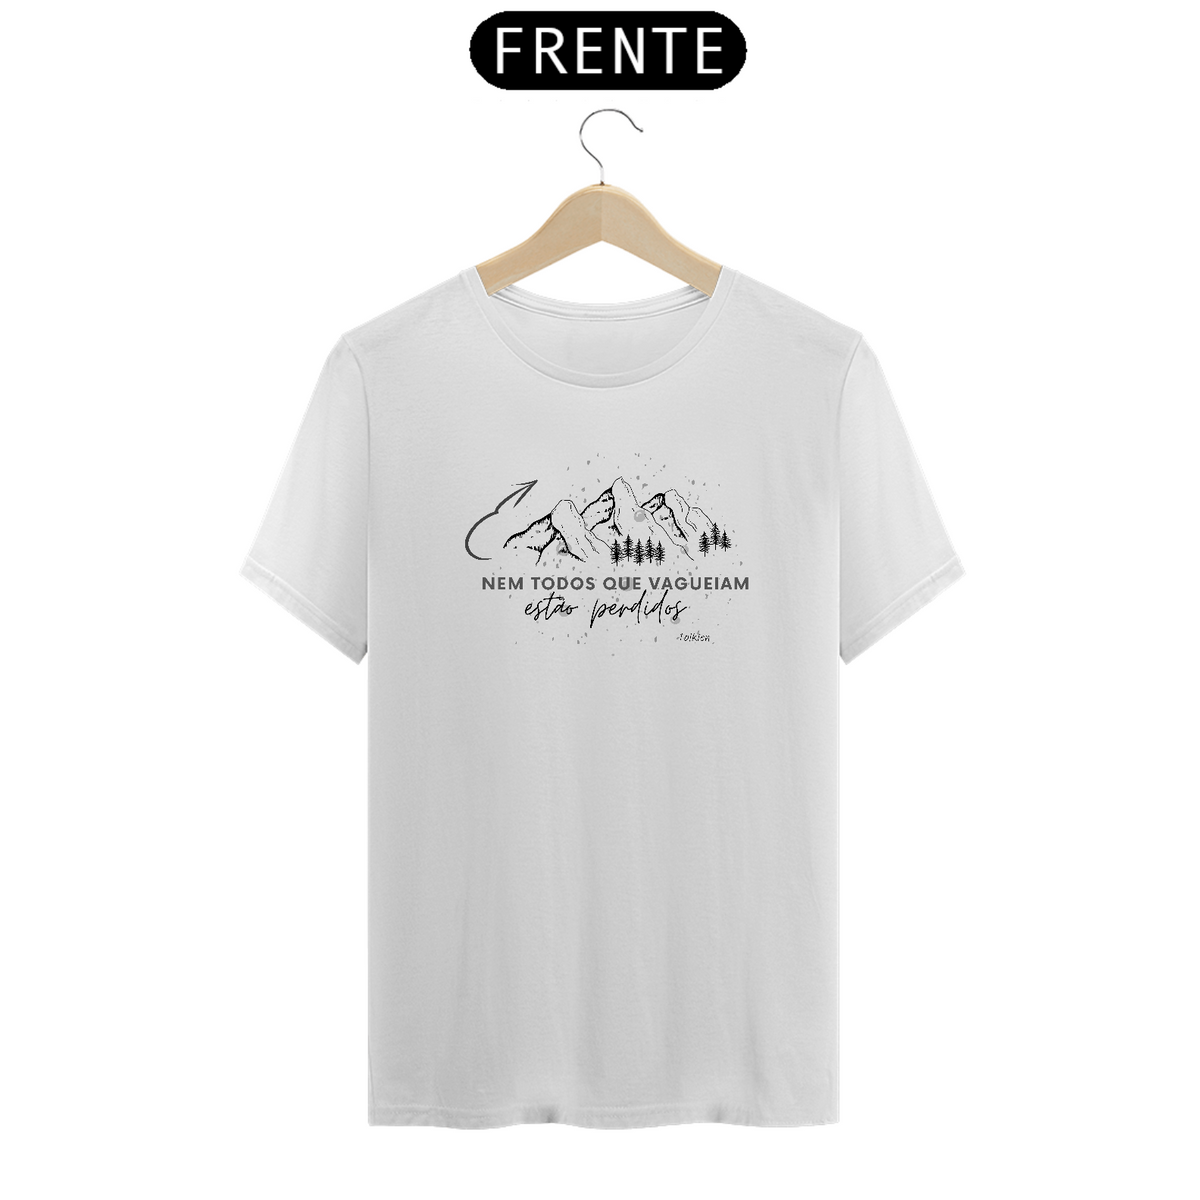 Nome do produto: Camiseta Masculina Tolkien - Nem todos que vagueiam estão perdidos